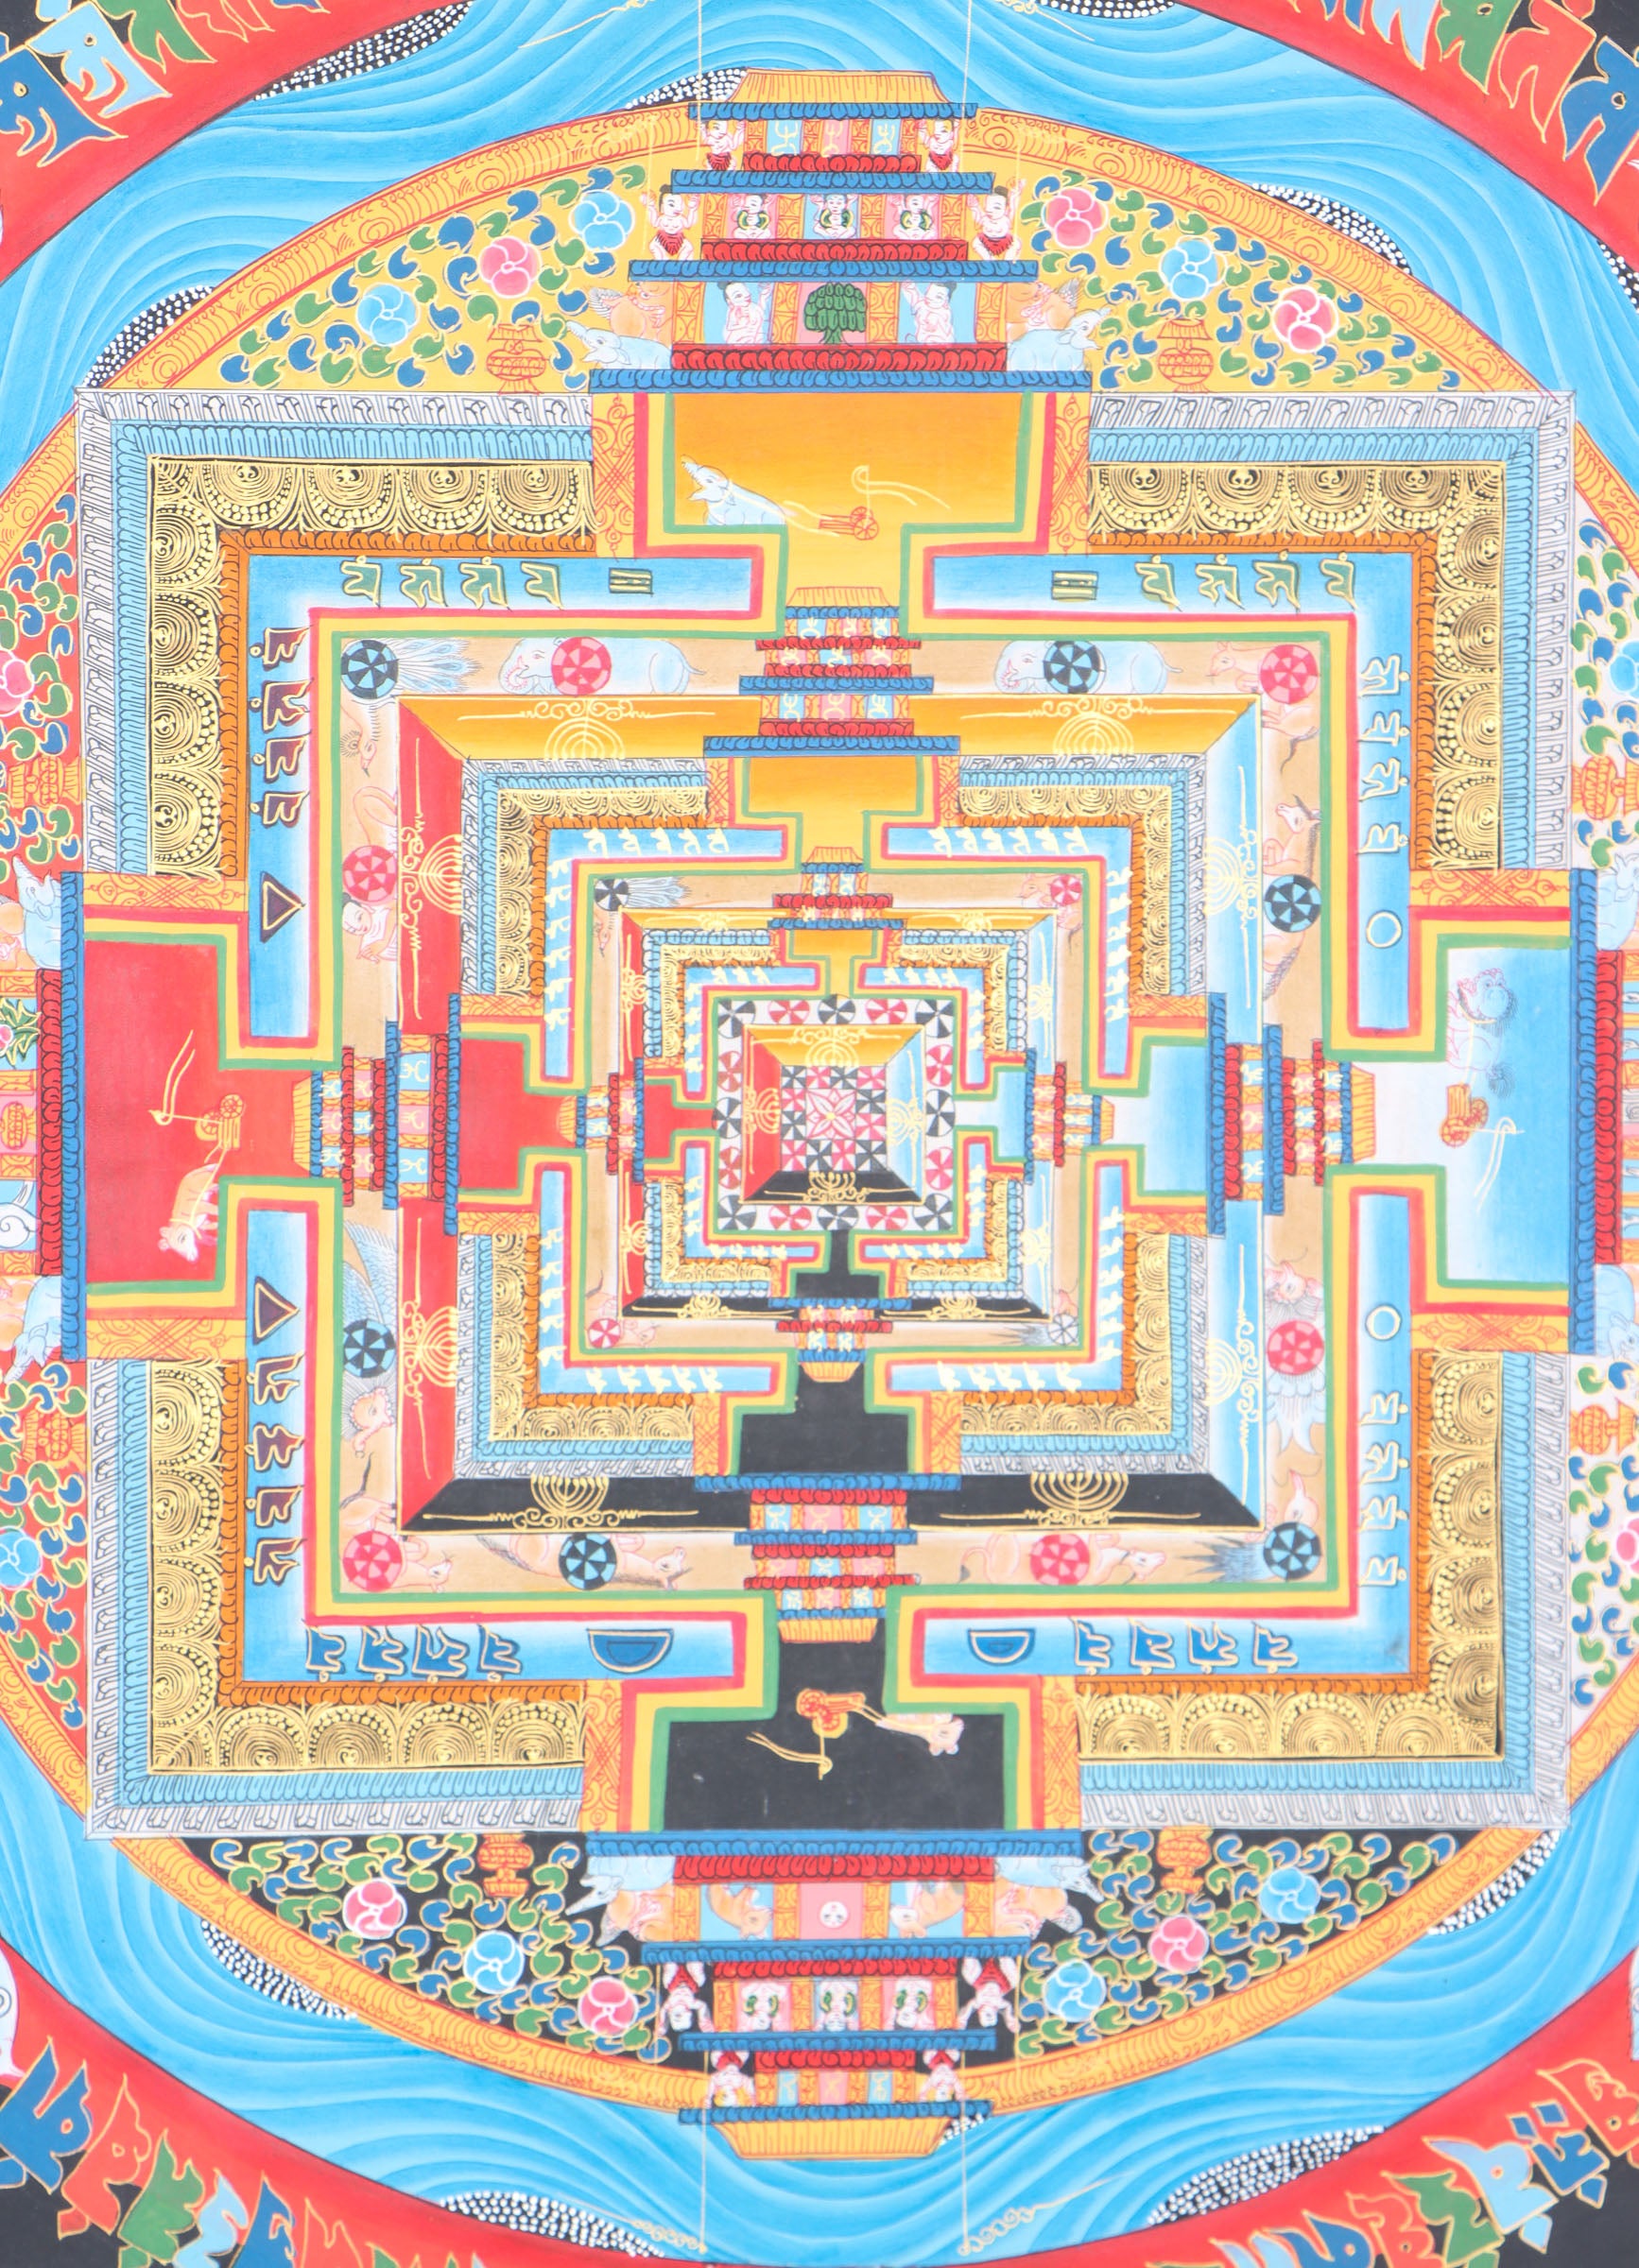 Kalachakra Mandala for Inner Harmony and Balance.